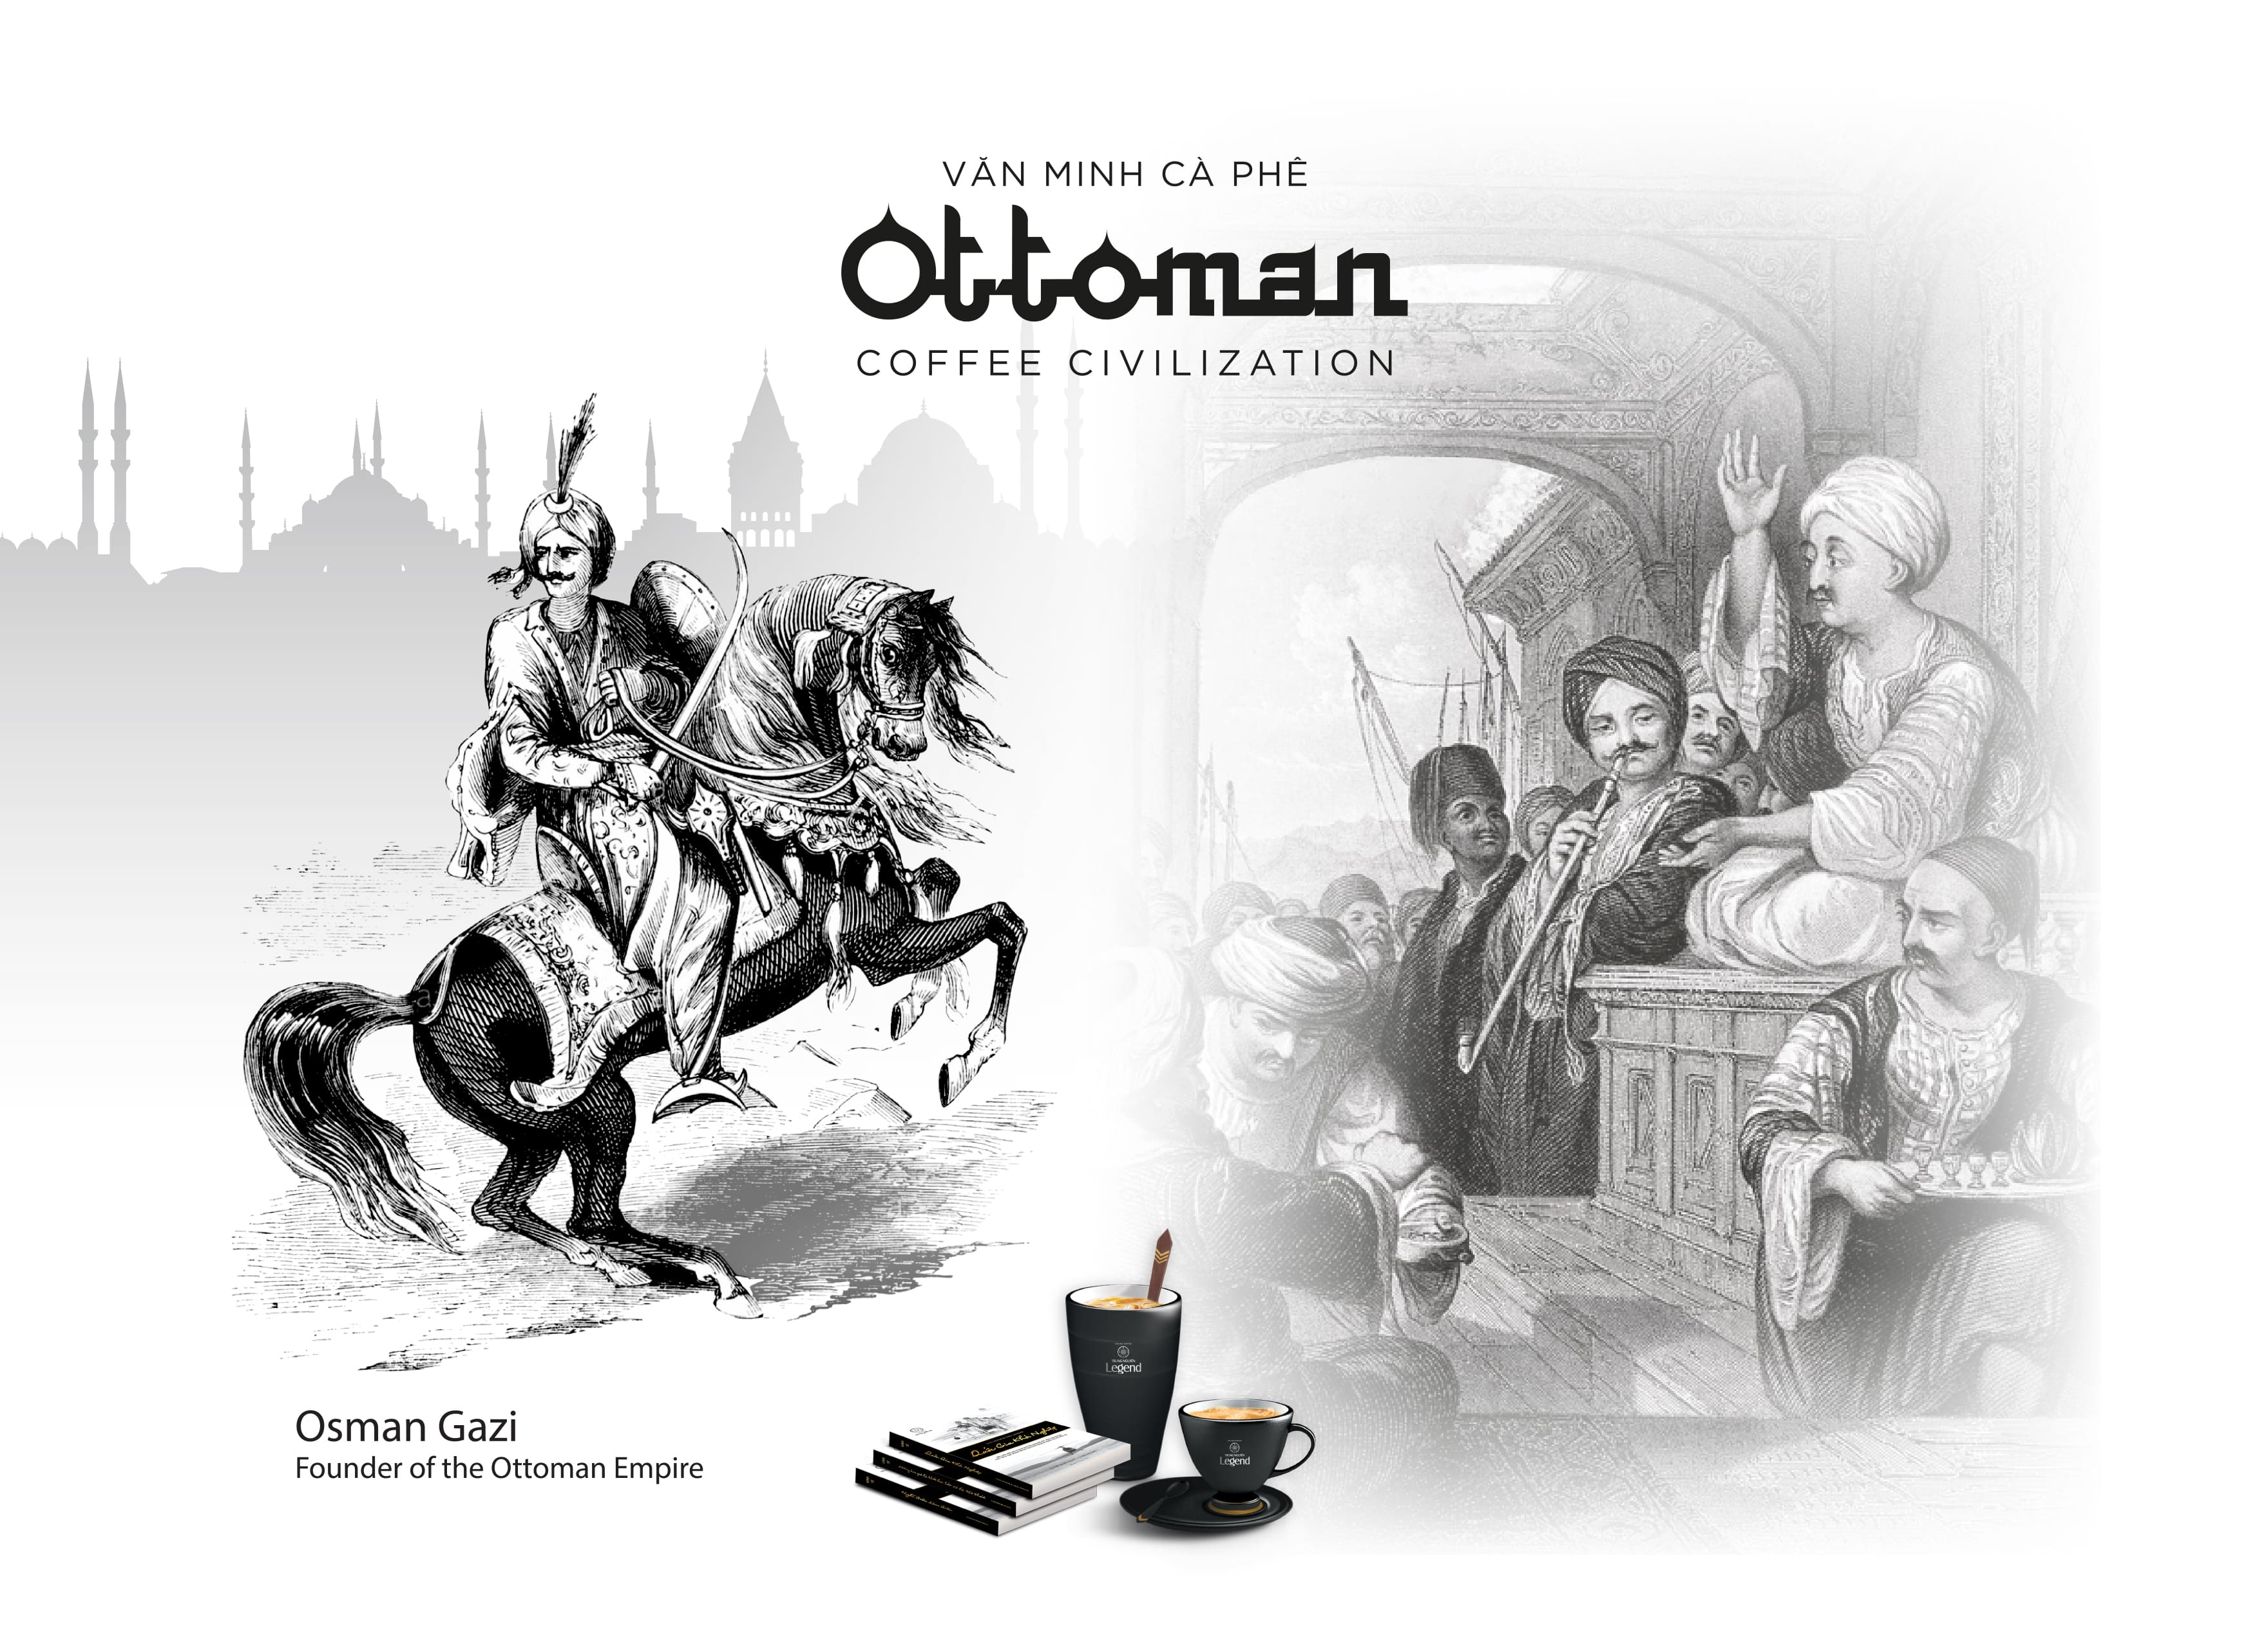 Ottoman coffee civilization